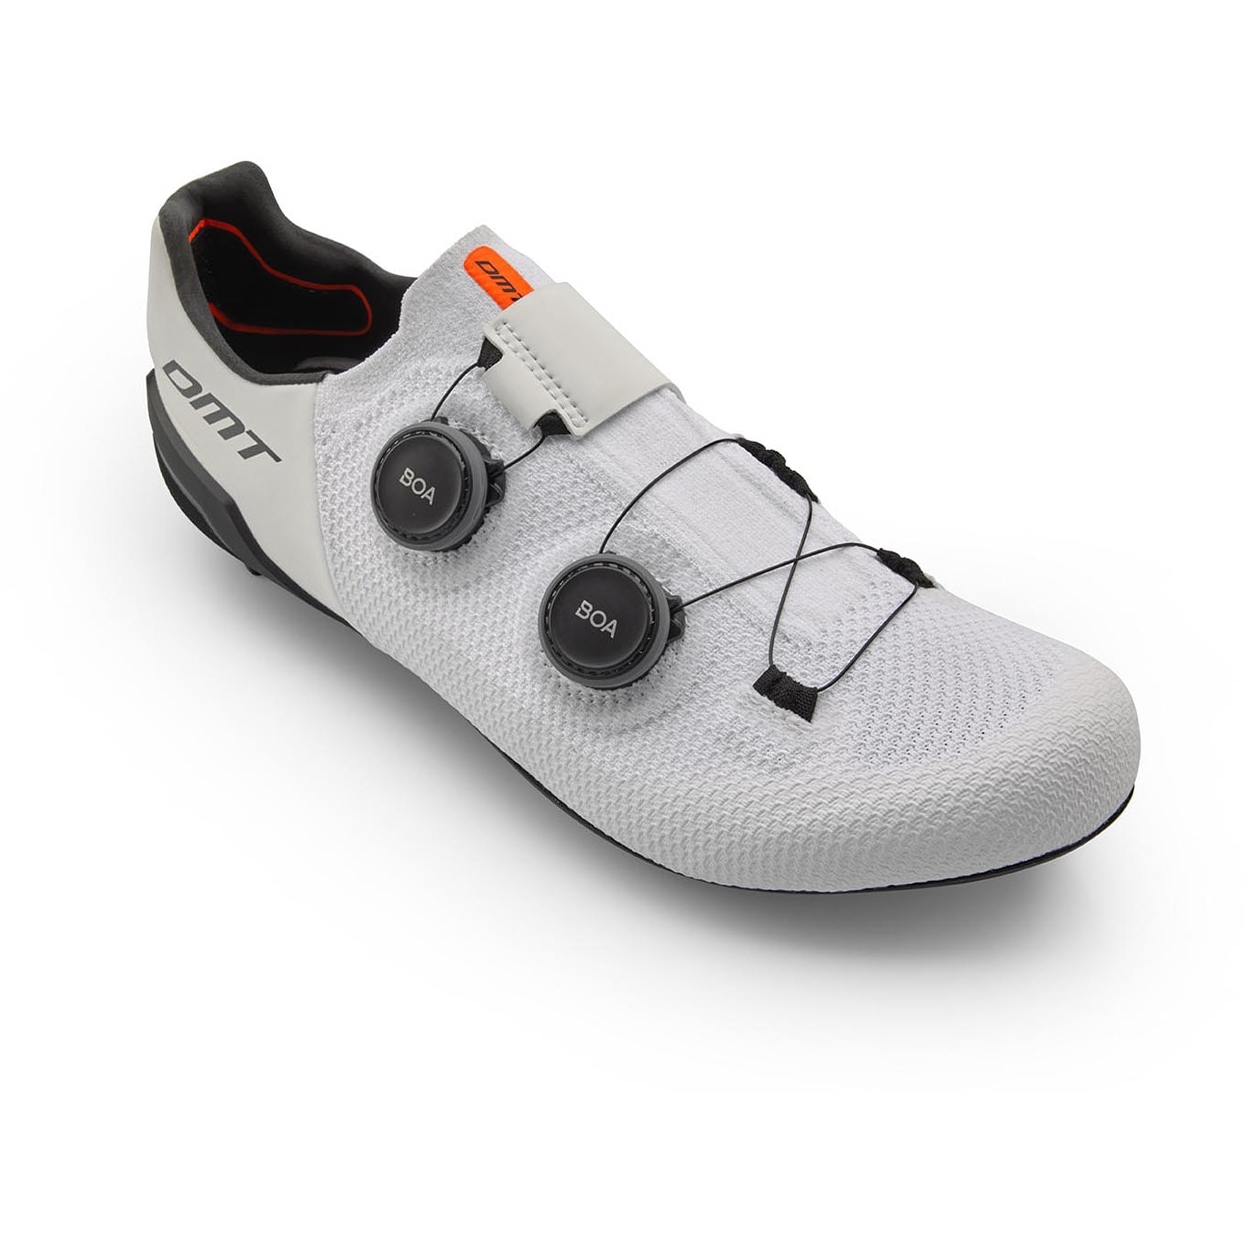 Productfoto van DMT SH10 Racefietsschoenen - wit/zwart